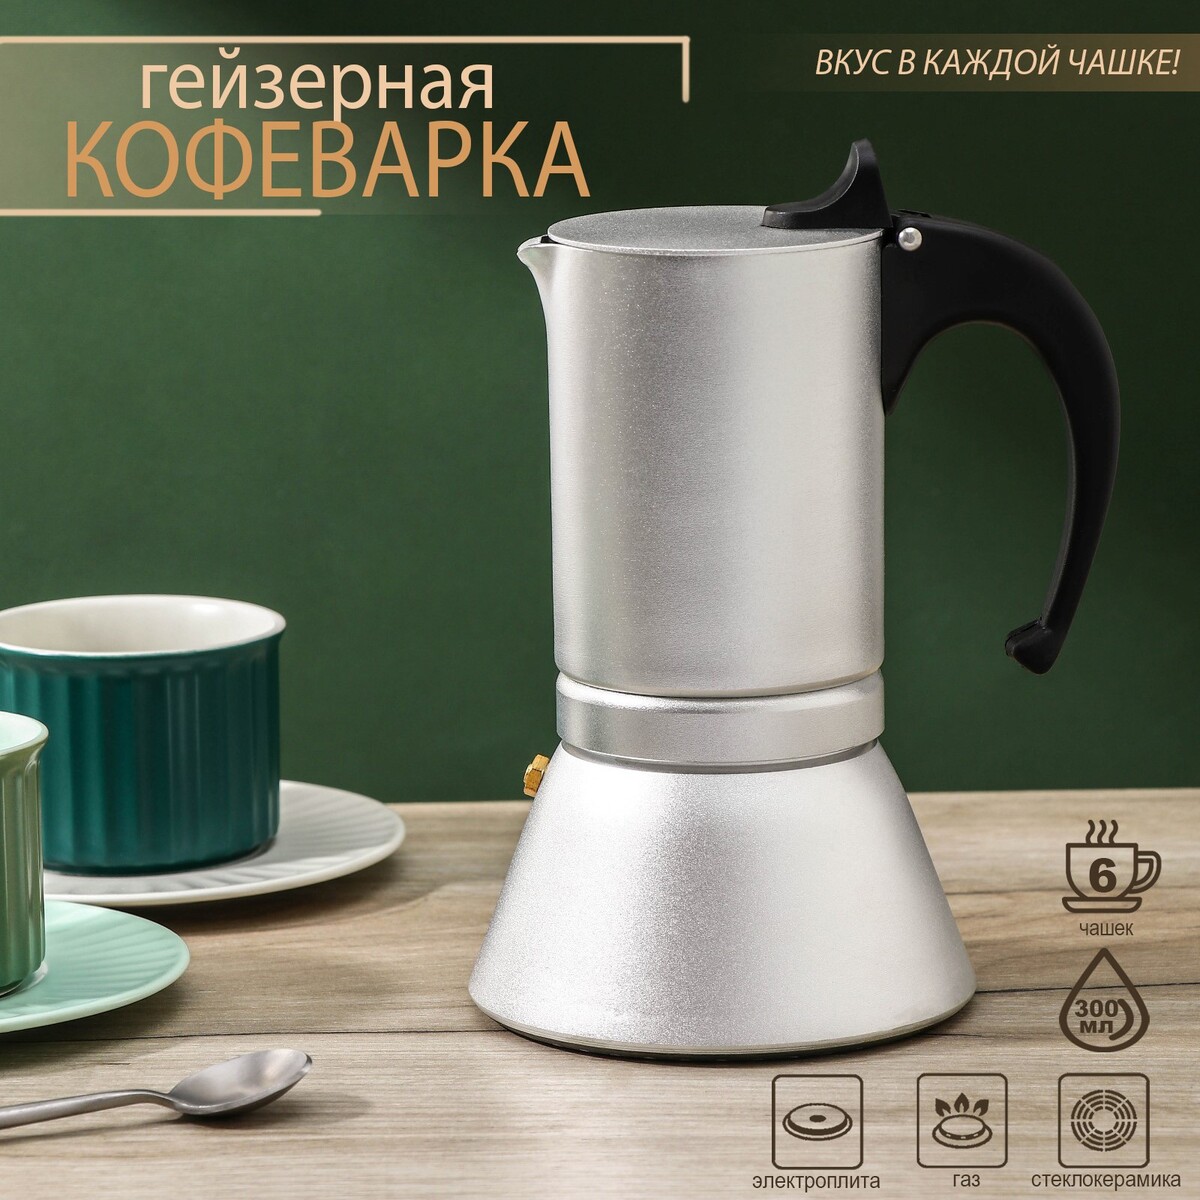 Кофеварка гейзерная magistro salem, на 6 чашек, 300 мл, индукция кофеварка гейзерная 300 мл vinzer latte crema 6 чашек